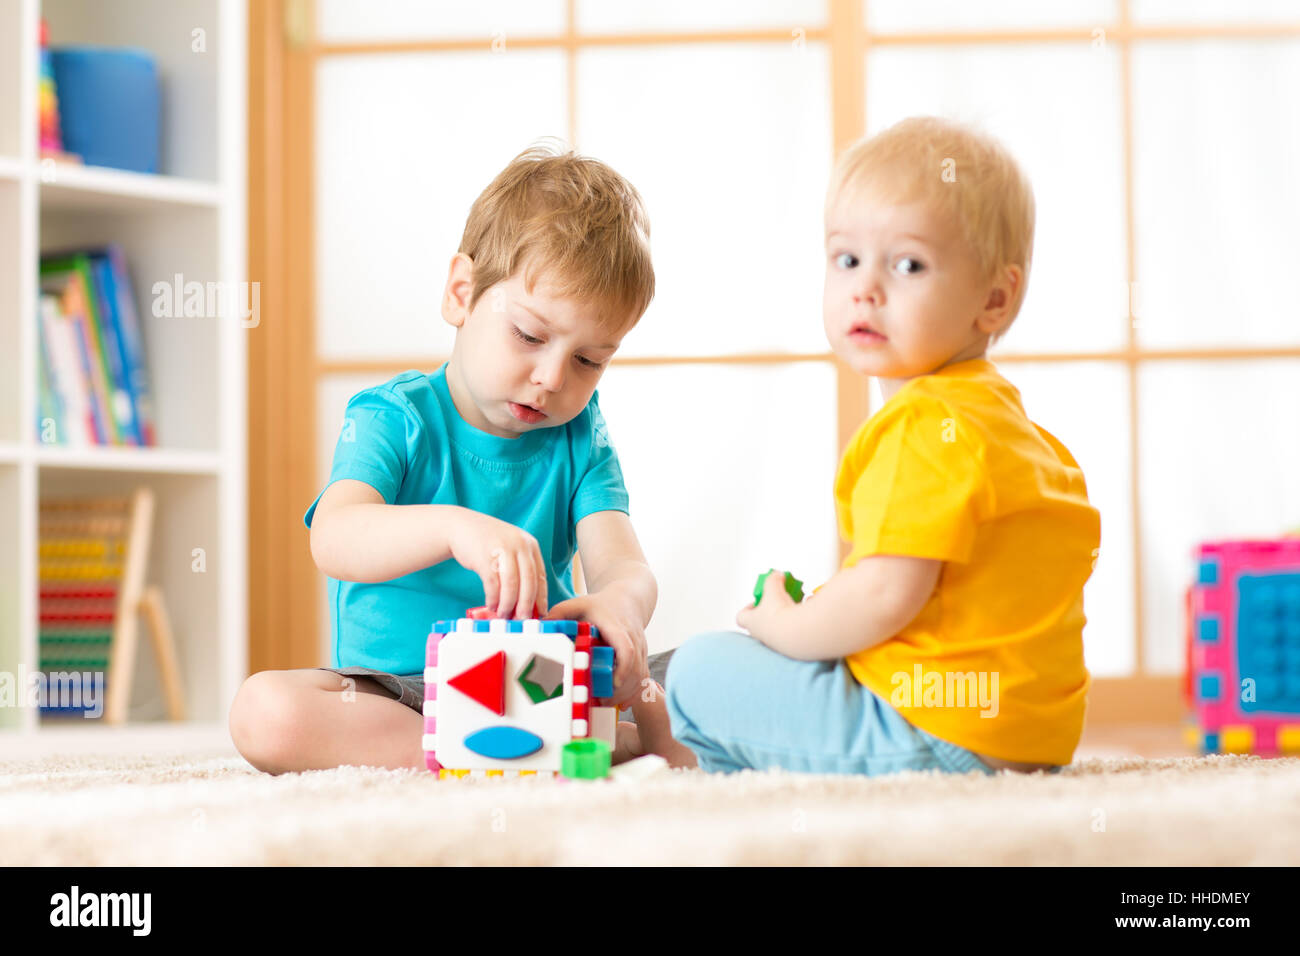 Kinder spielen mit logischen Spielzeug auf weichen Teppich im Kinderzimmer  Roomor Kindergarten. Kinder ordnen und sortieren, Formen und Größen  Stockfotografie - Alamy